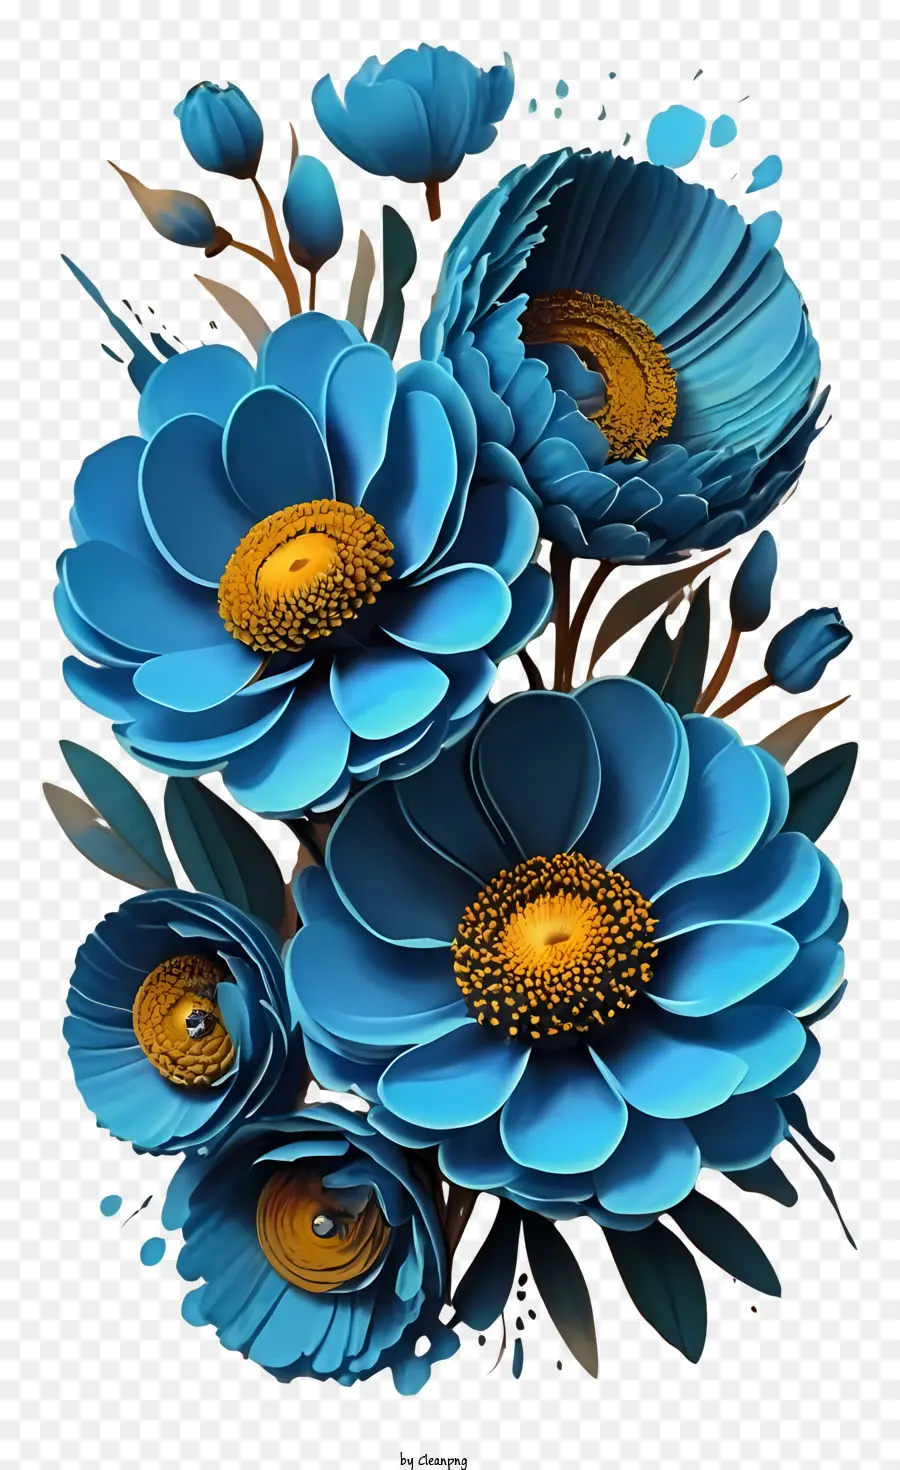 hoa sắp xếp - Sự sắp xếp hoa thực tế với màu xanh trên màu đen